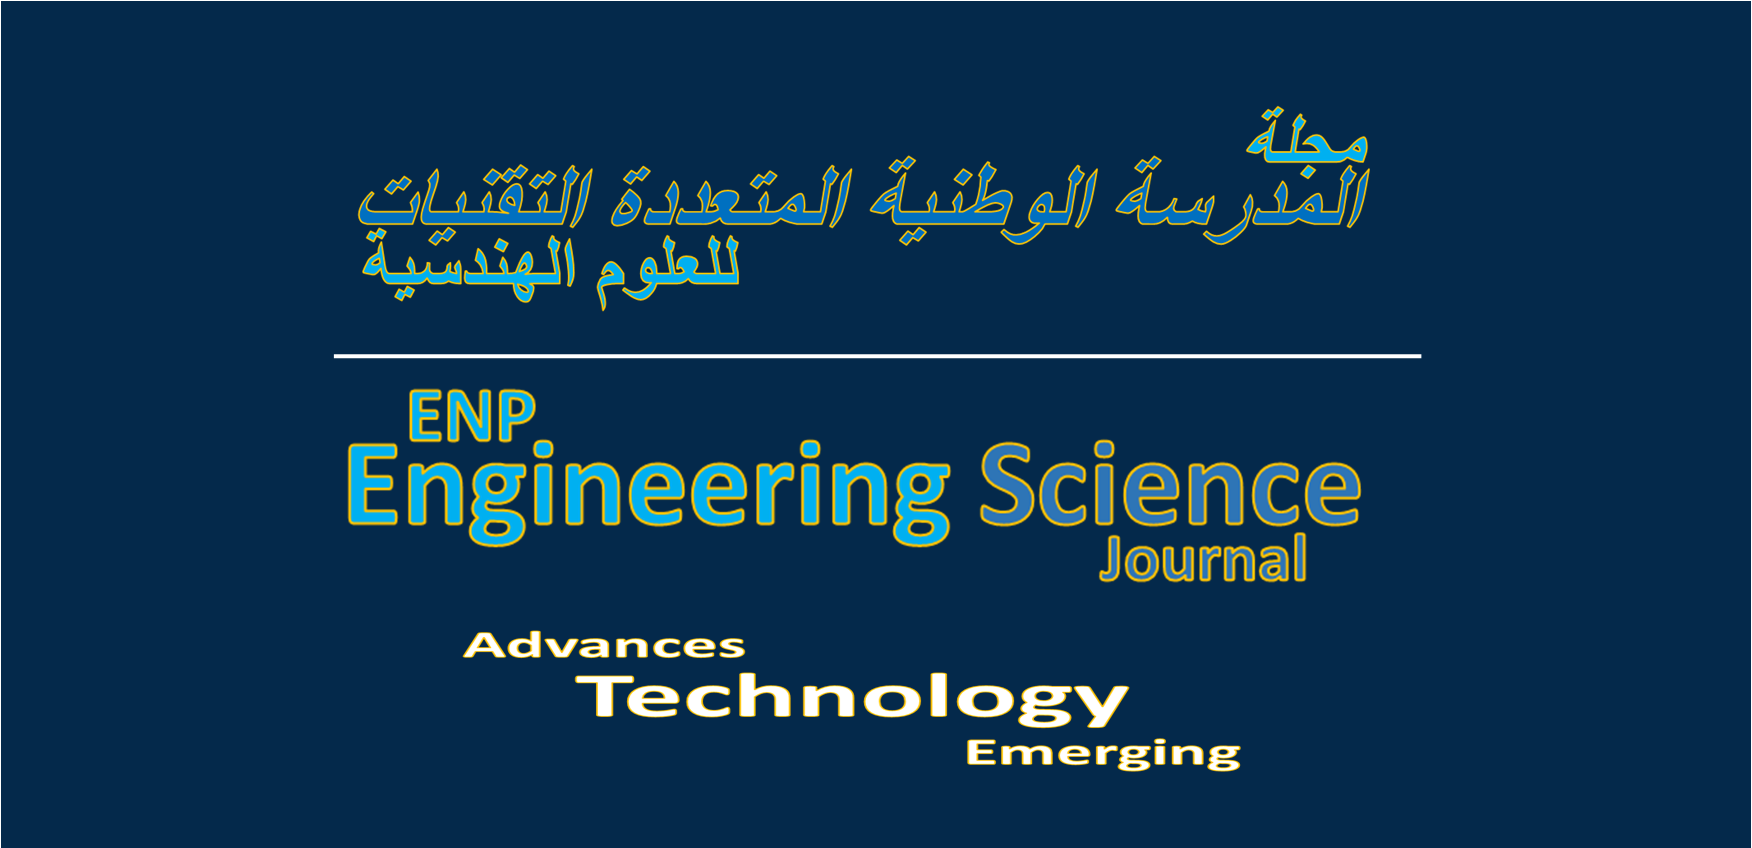 ENP Engineering Science Journal